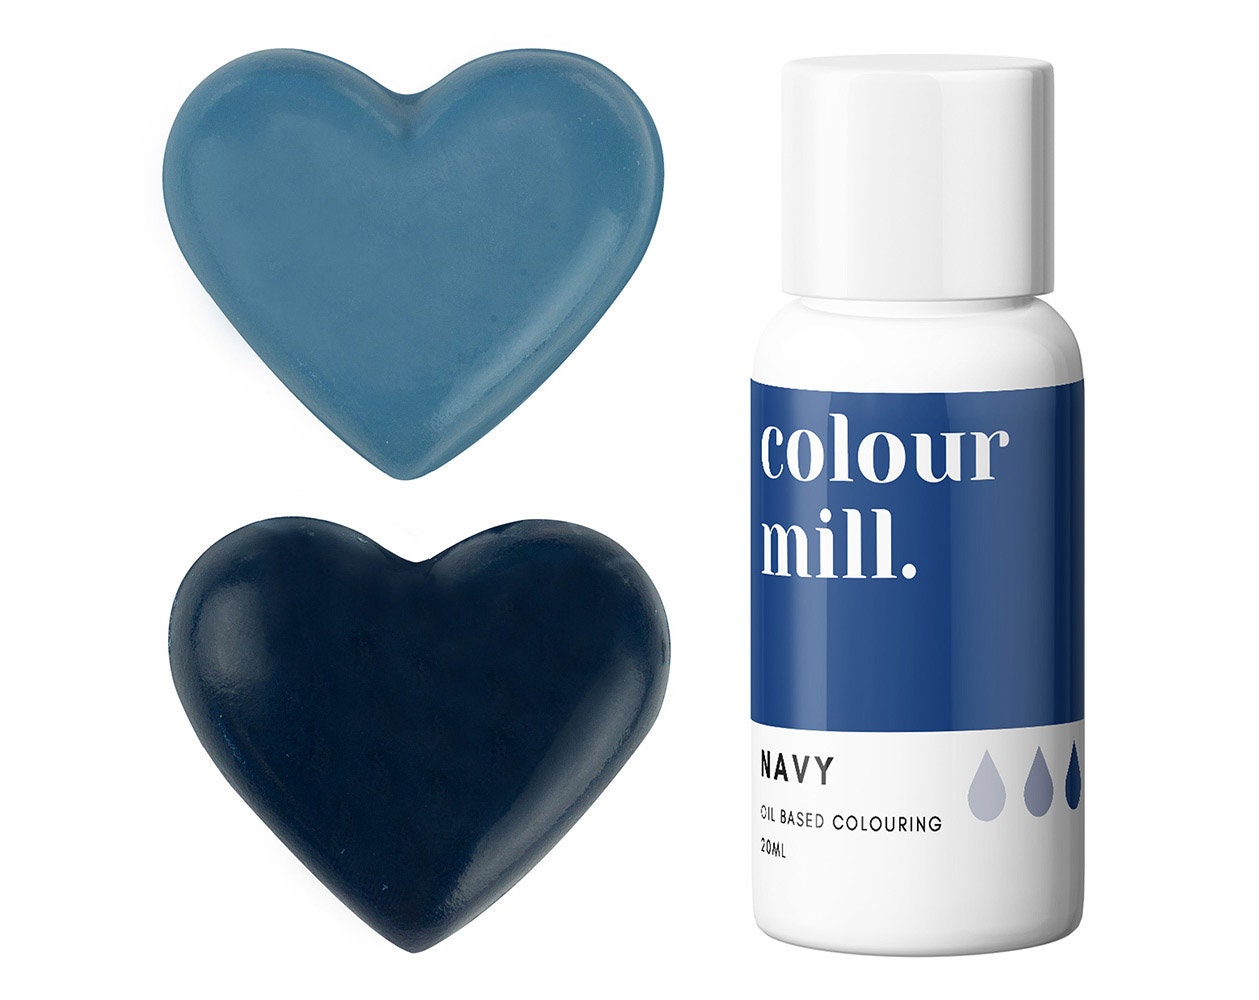 Colour Mill Oil Blend Blush 20 ml 